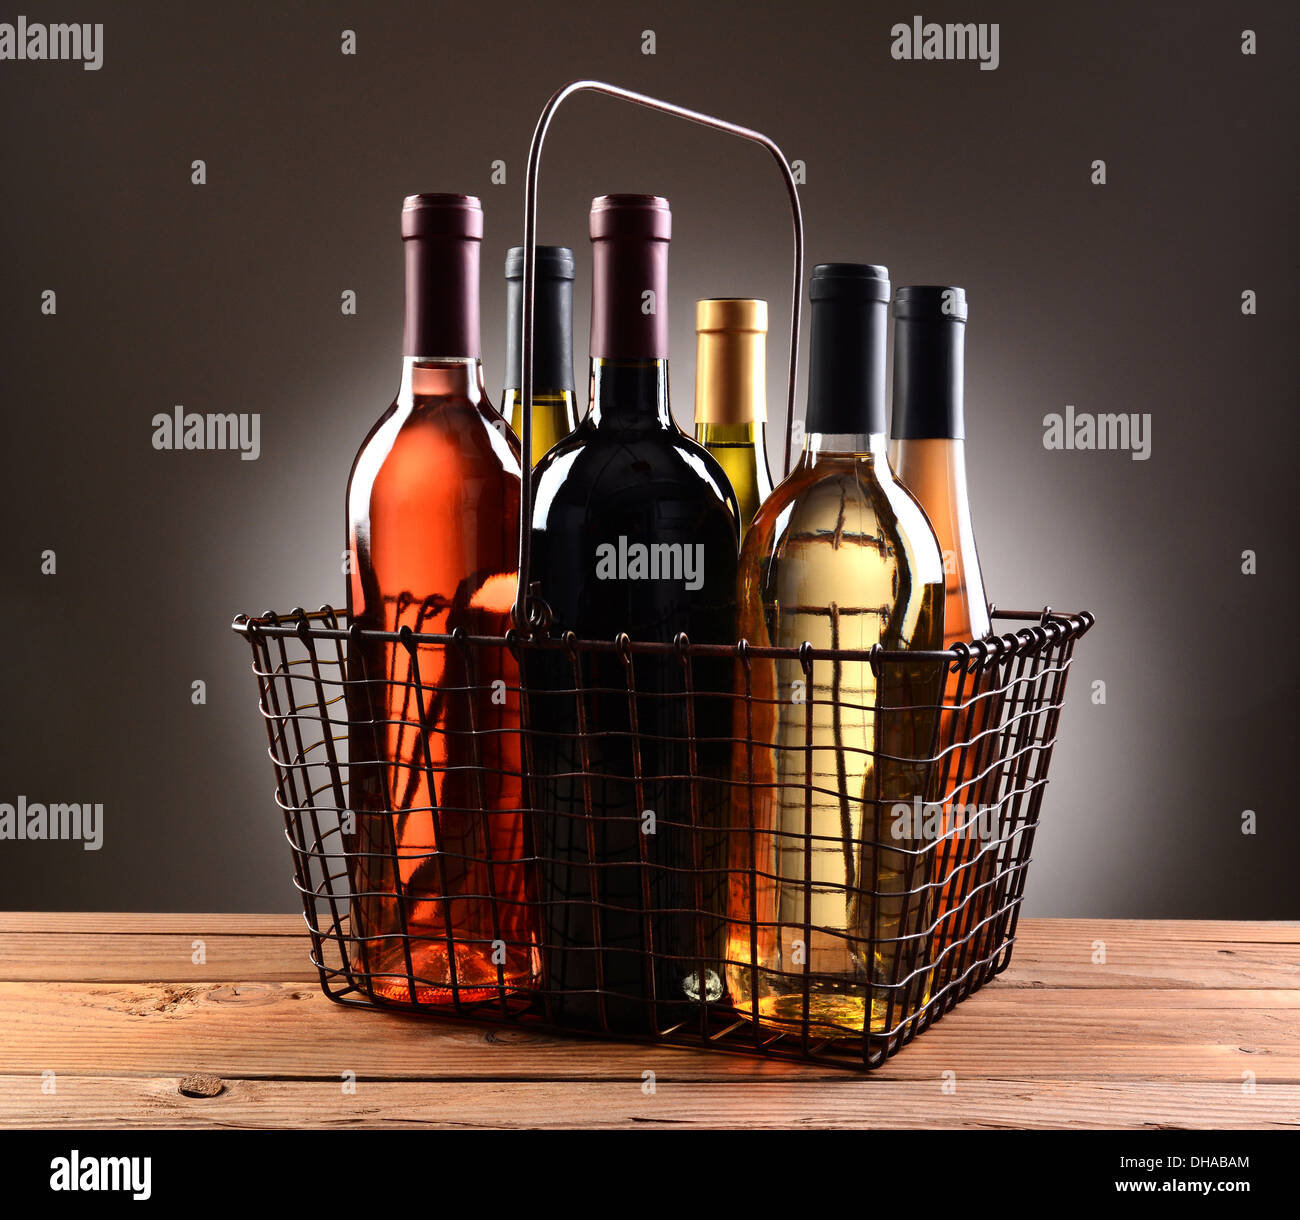 Un filo carrello riempito con assortimento di bottiglie di vino. Il cestello è seduta su una tavola in legno rustico Foto Stock